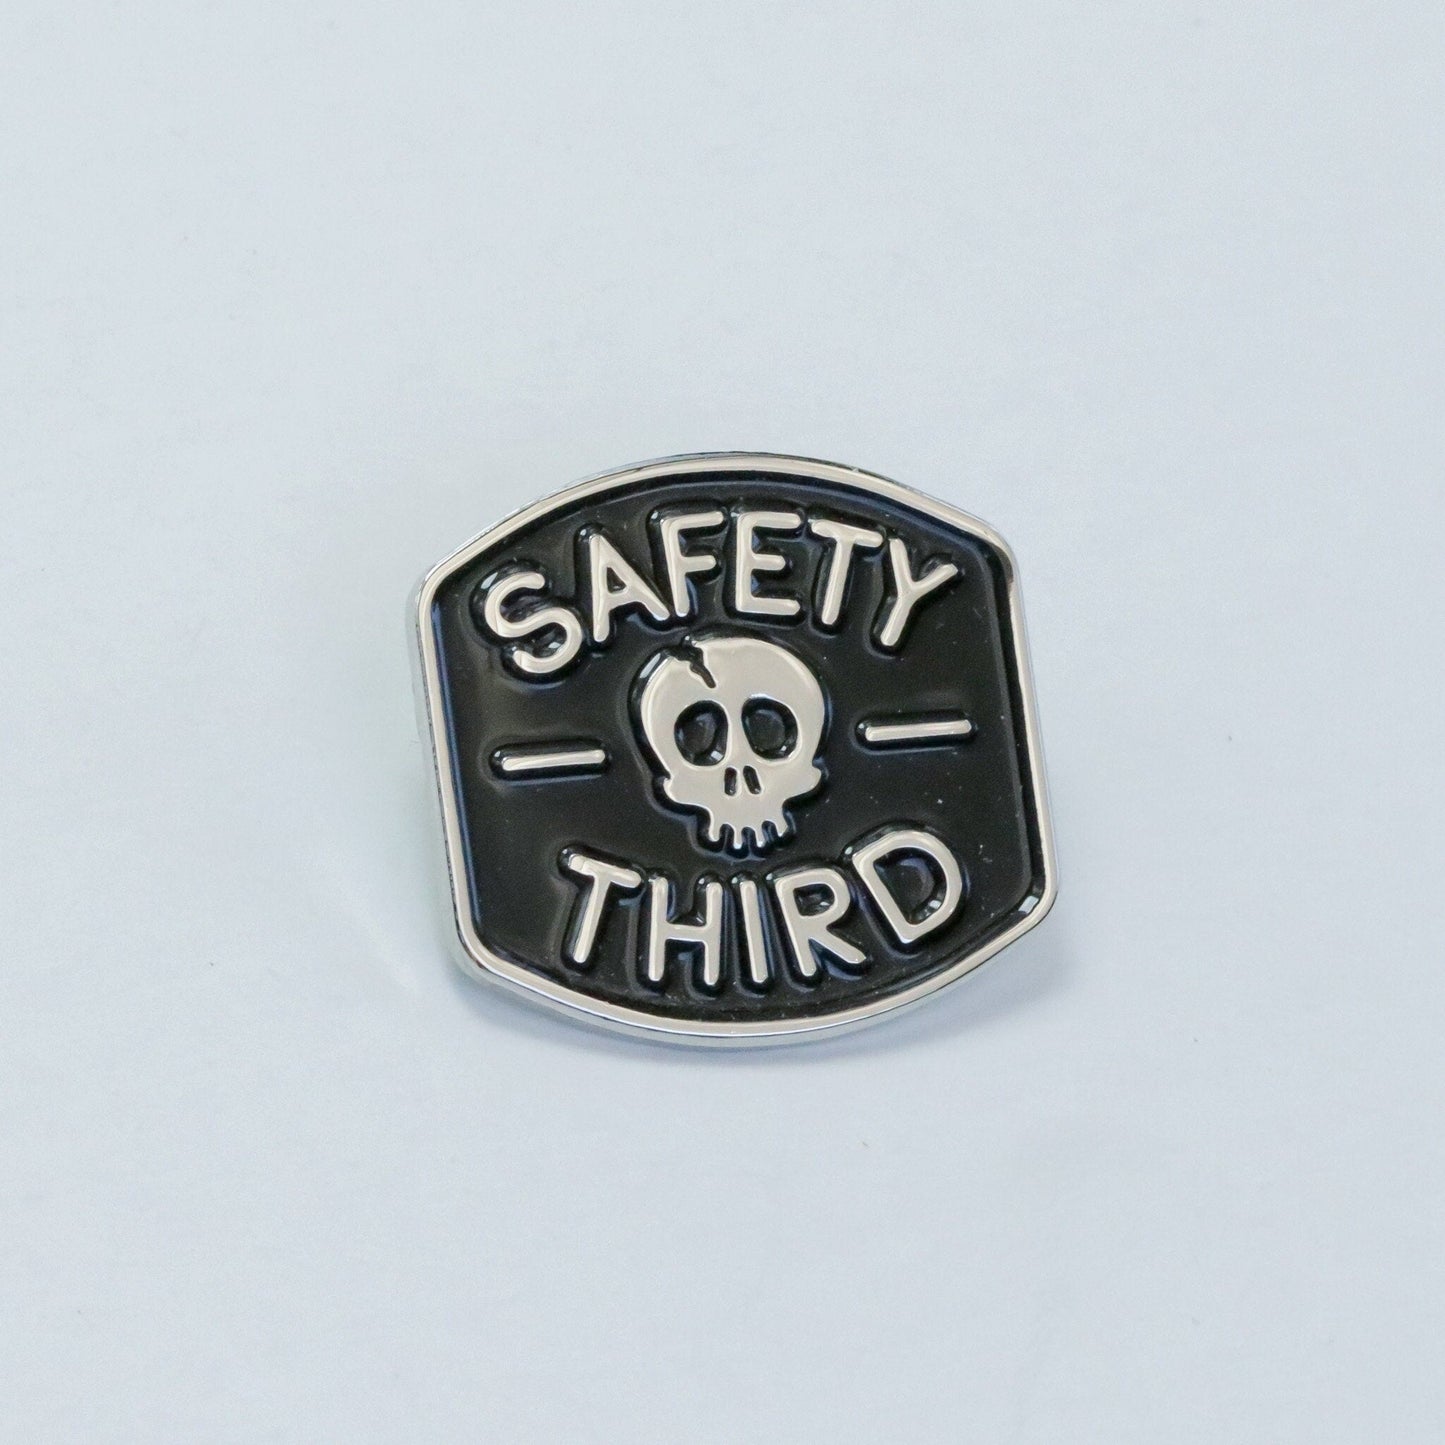 Safety 3rd Enamel Pin